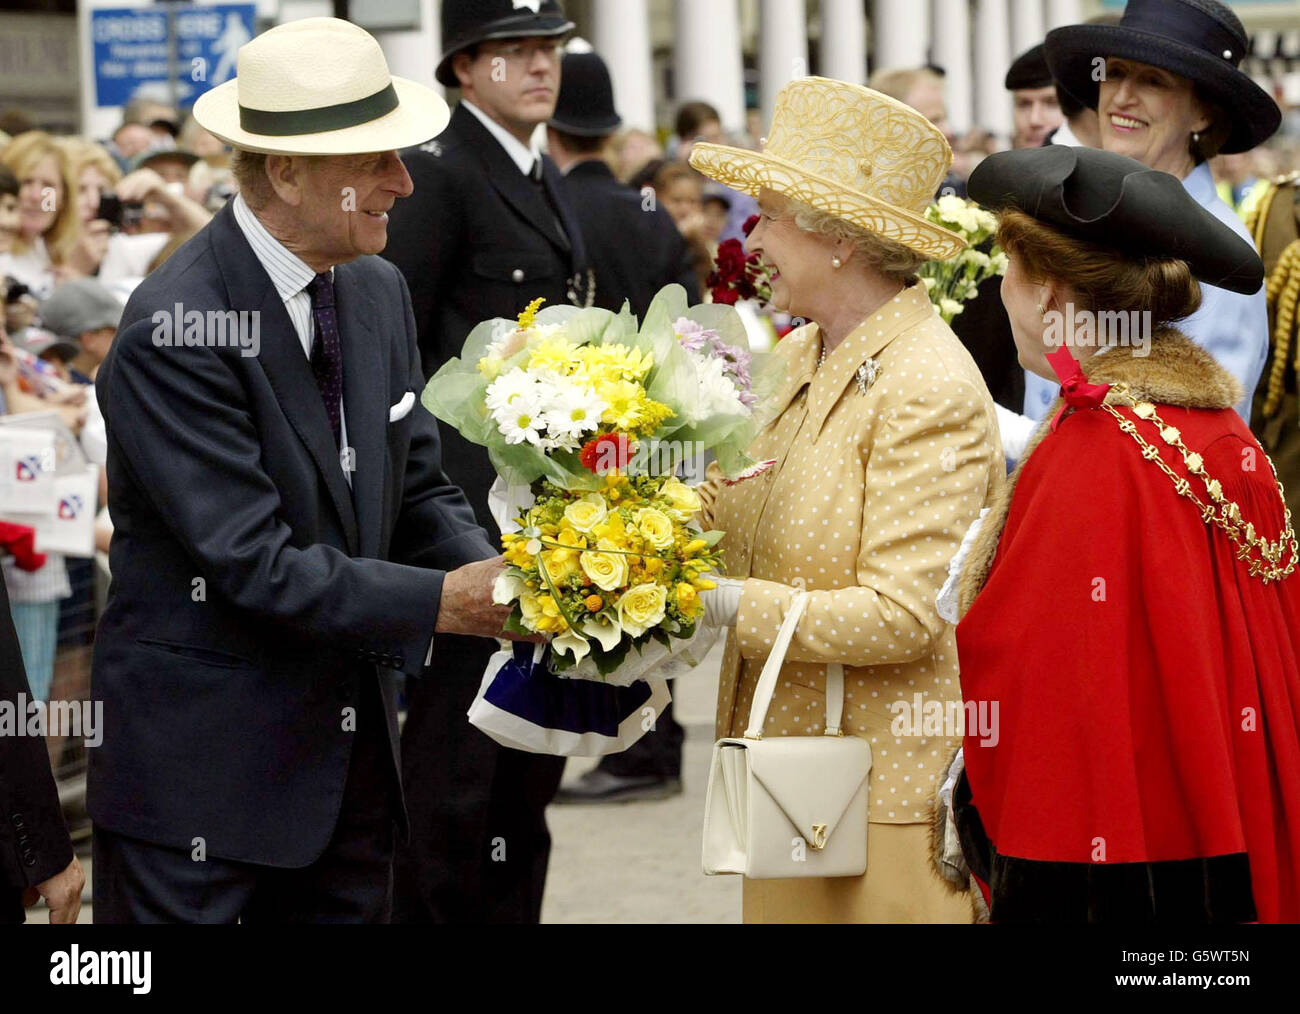 Königin Elizabeth II. Wird vom Herzog von Edinburgh Blumen überreicht, wie sie von den wohlhabenden Menschen im Stadtzentrum von Uxbridge während ihres Golden Jubilee-Besuches in Middlesex empfangen werden. Stockfoto